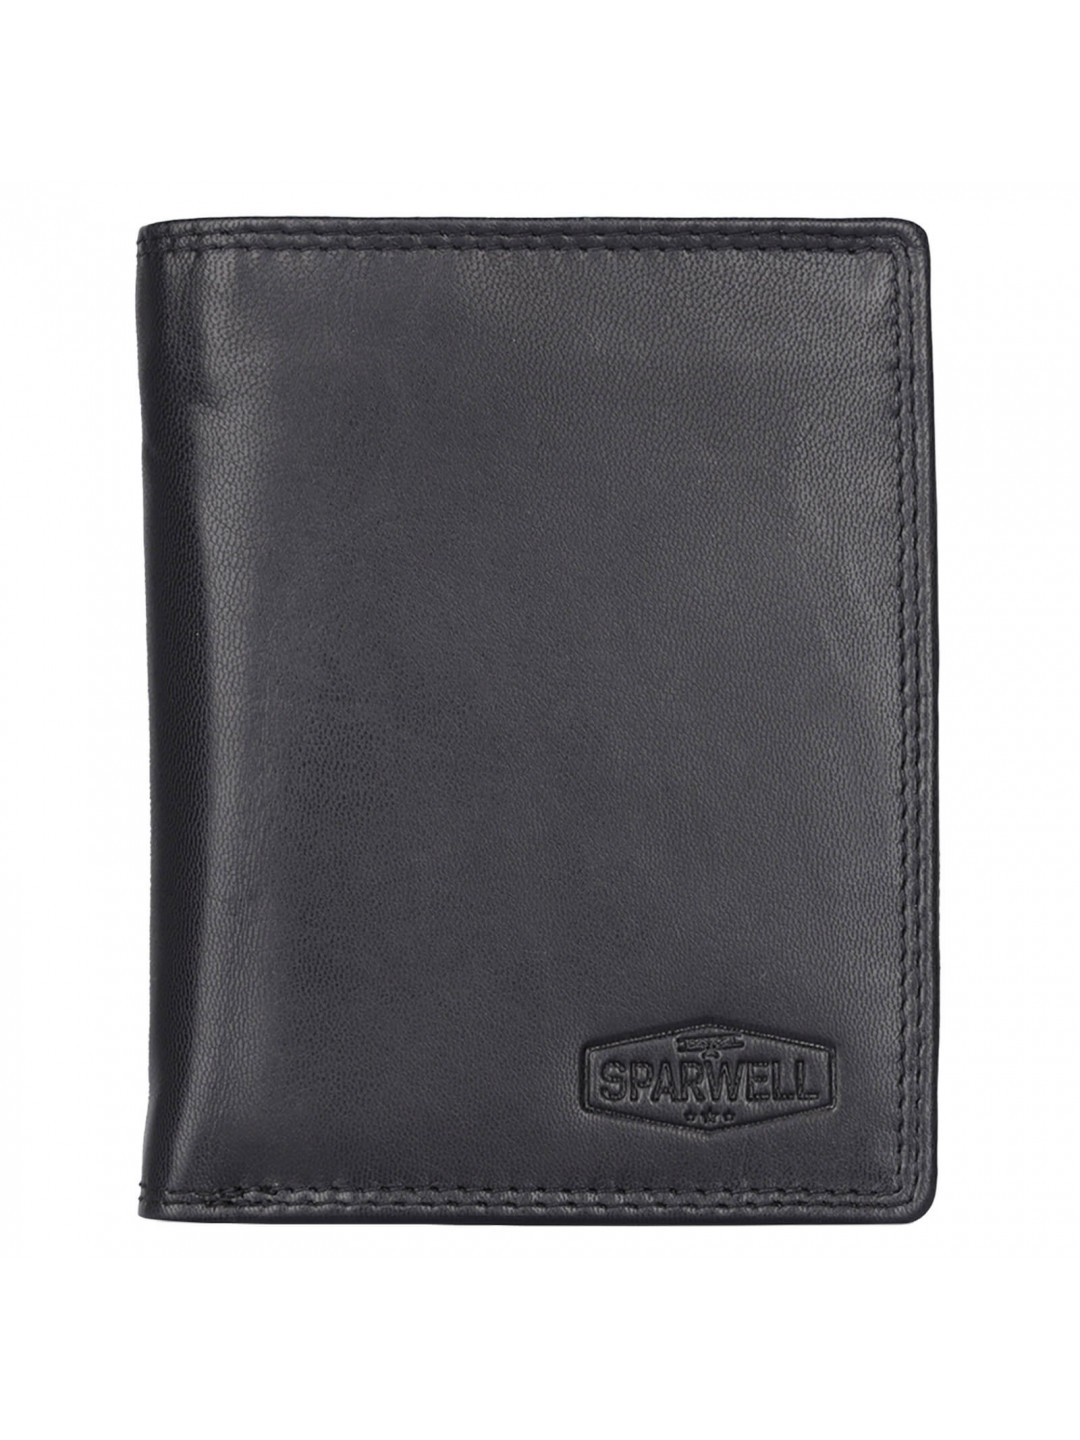 Pánská kožená peněženka Sparwell Sten – černá